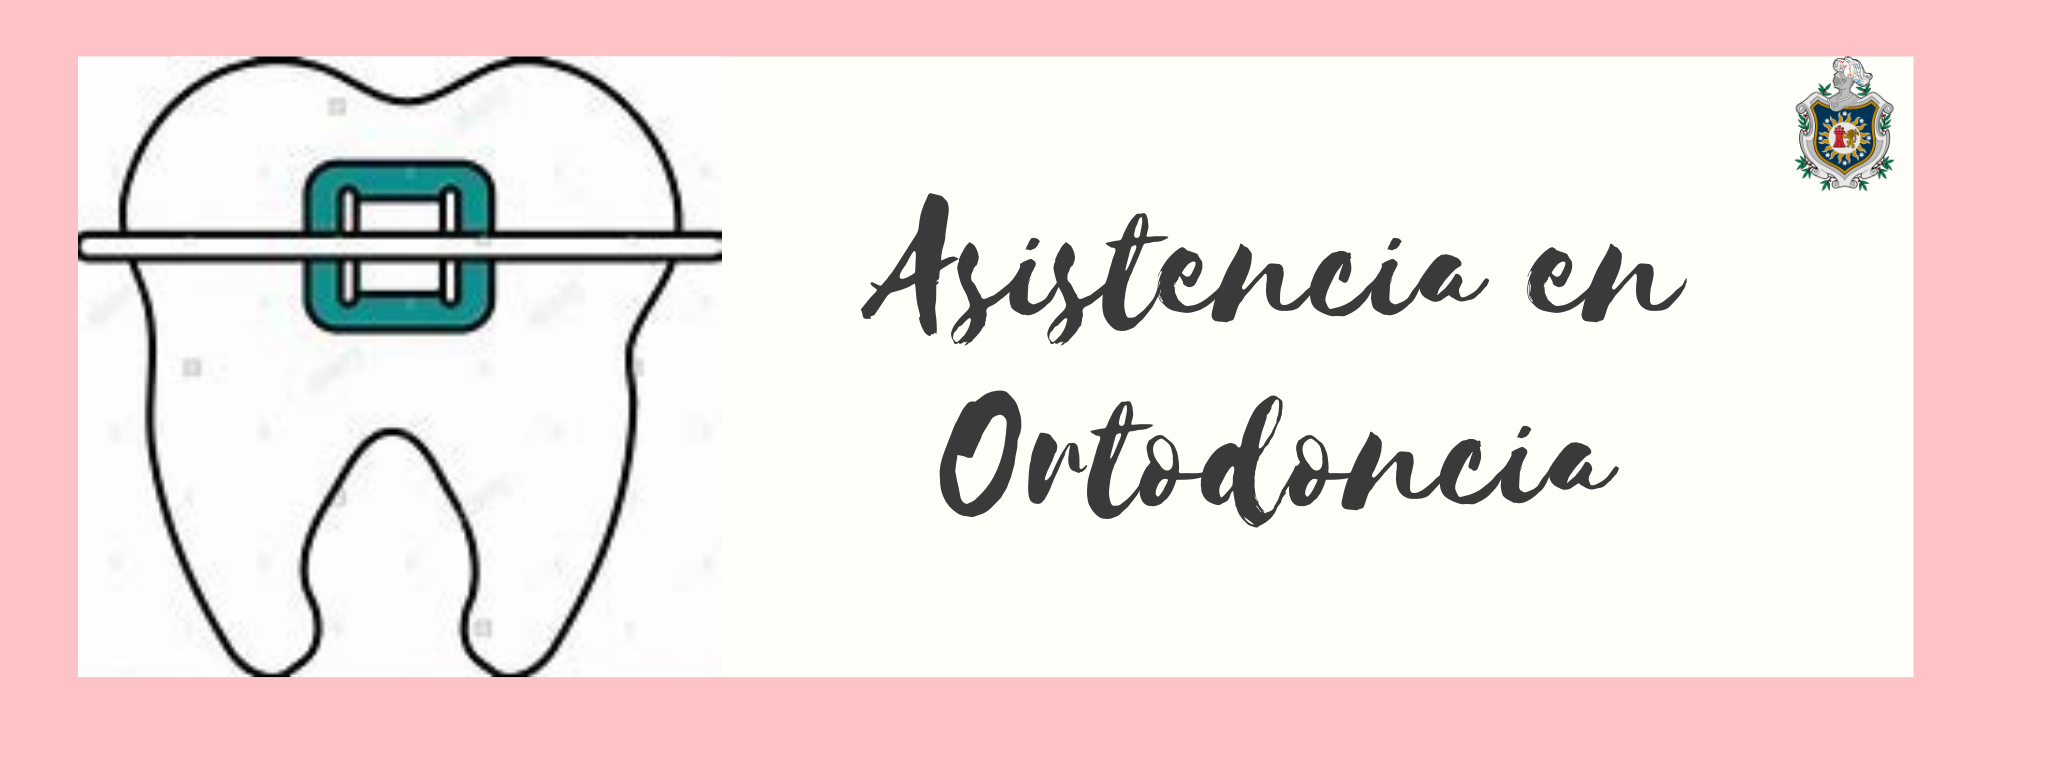 Asistencia en Ortodoncia